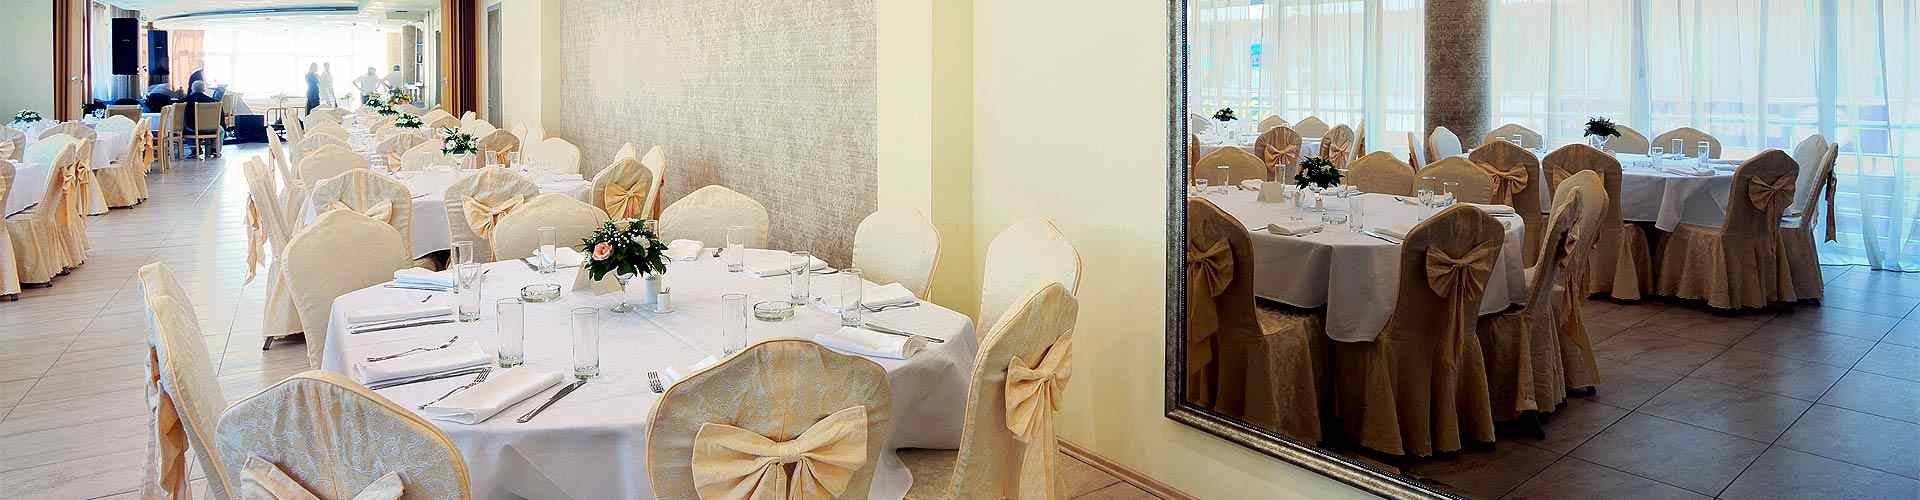 Restaurantes para bodas 2021 en Campillo de Salvatierra